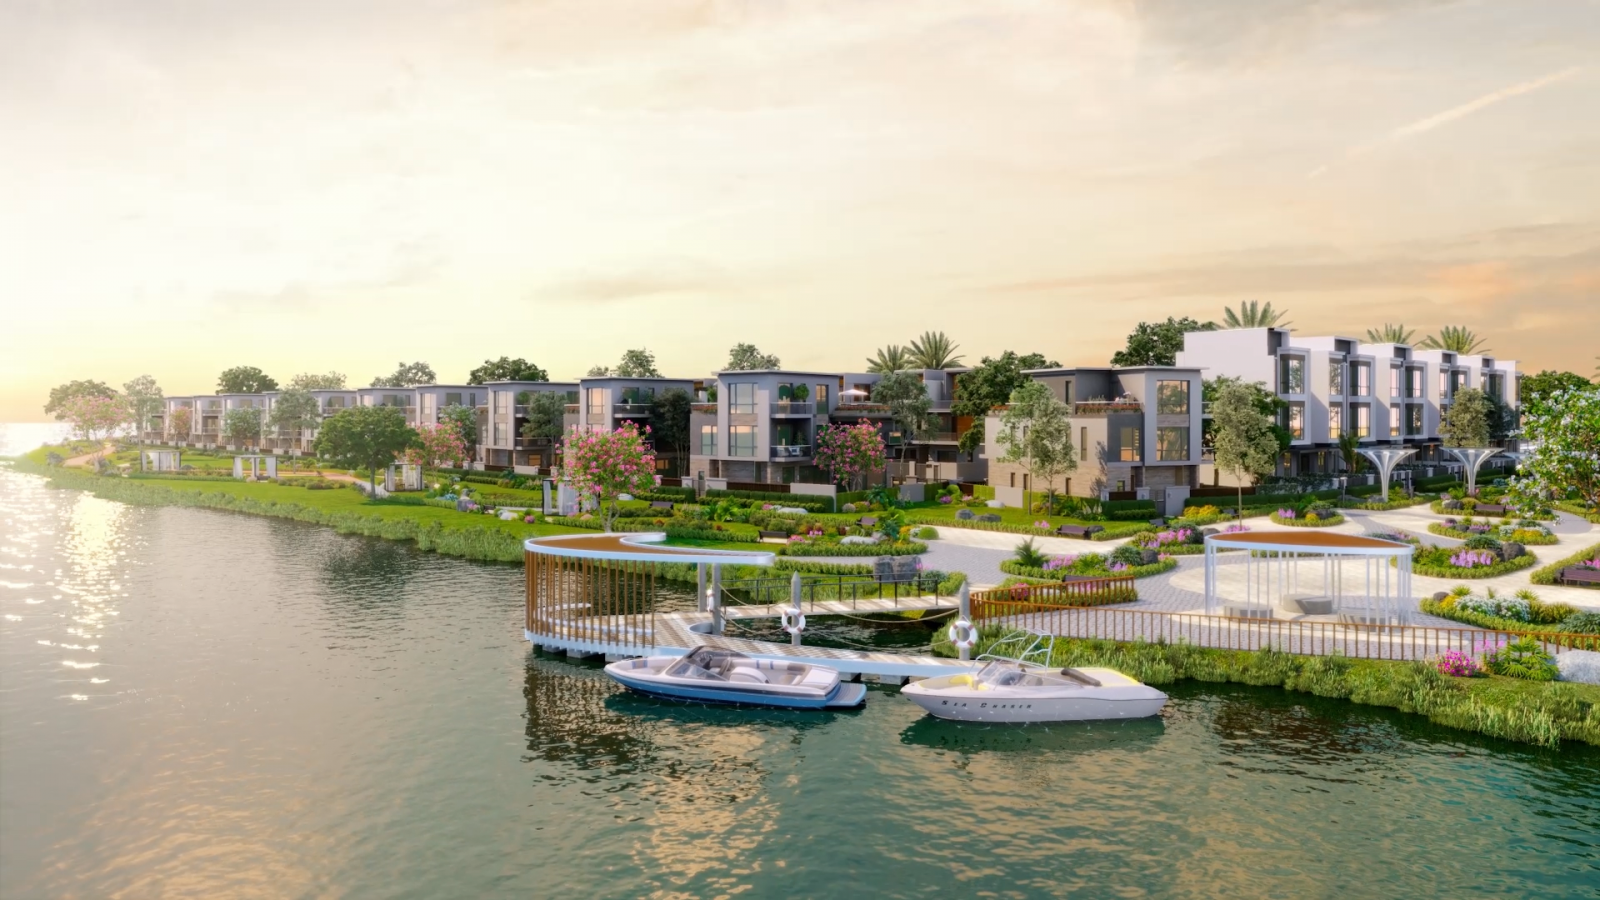 Đô thị sinh thái Aqua City quy hoạch  tối ưu không gian xanh cùng hệ tiện ích hiện đại tạo ra giá trị thực cho các nhà đầu tư bền vững